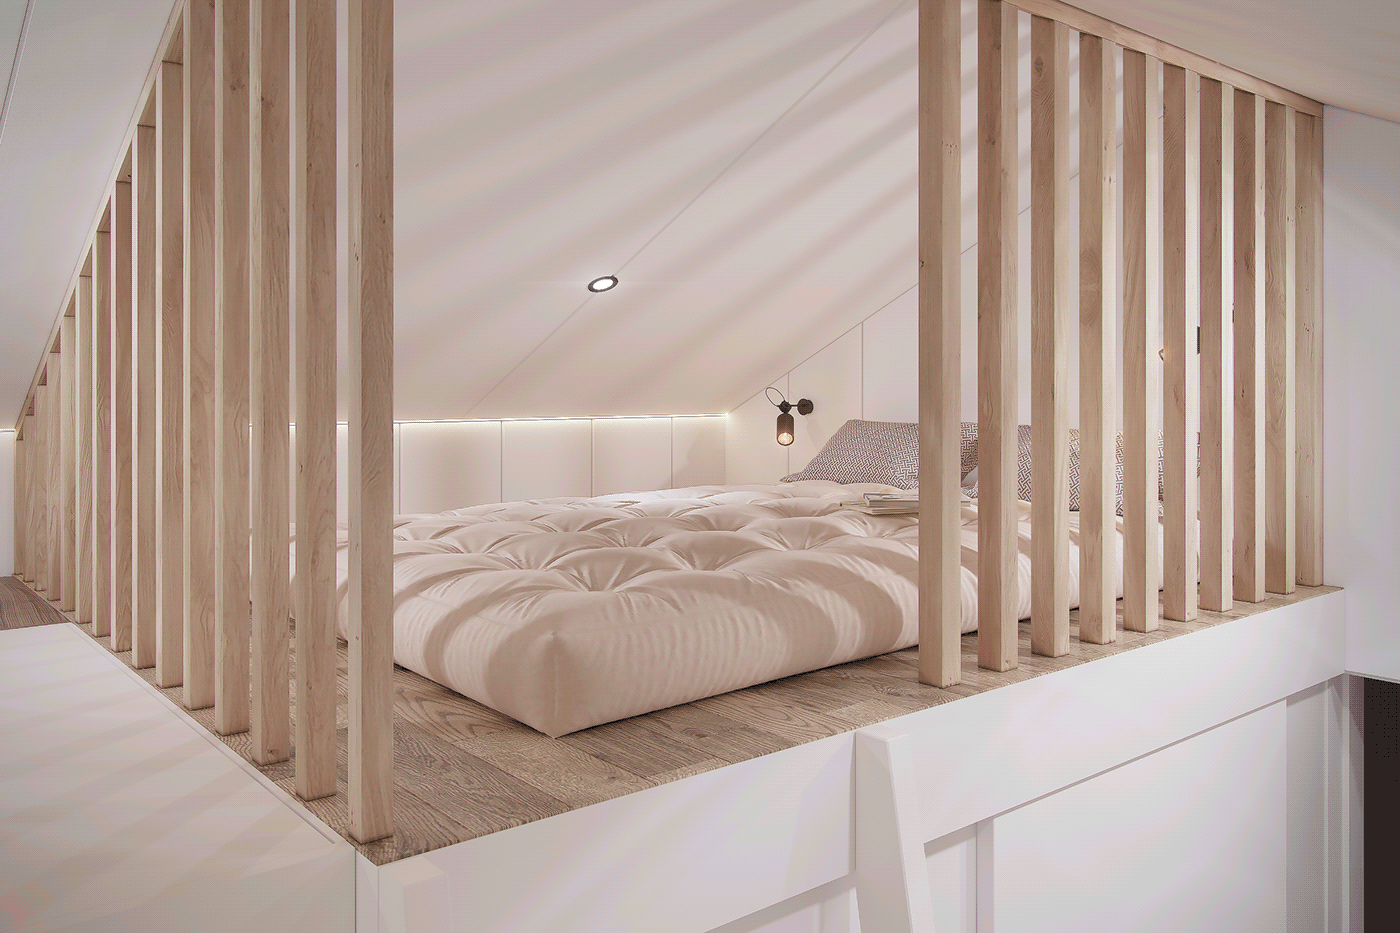 3ds max architecture interior design  Smallhouse Swedish visualization vray